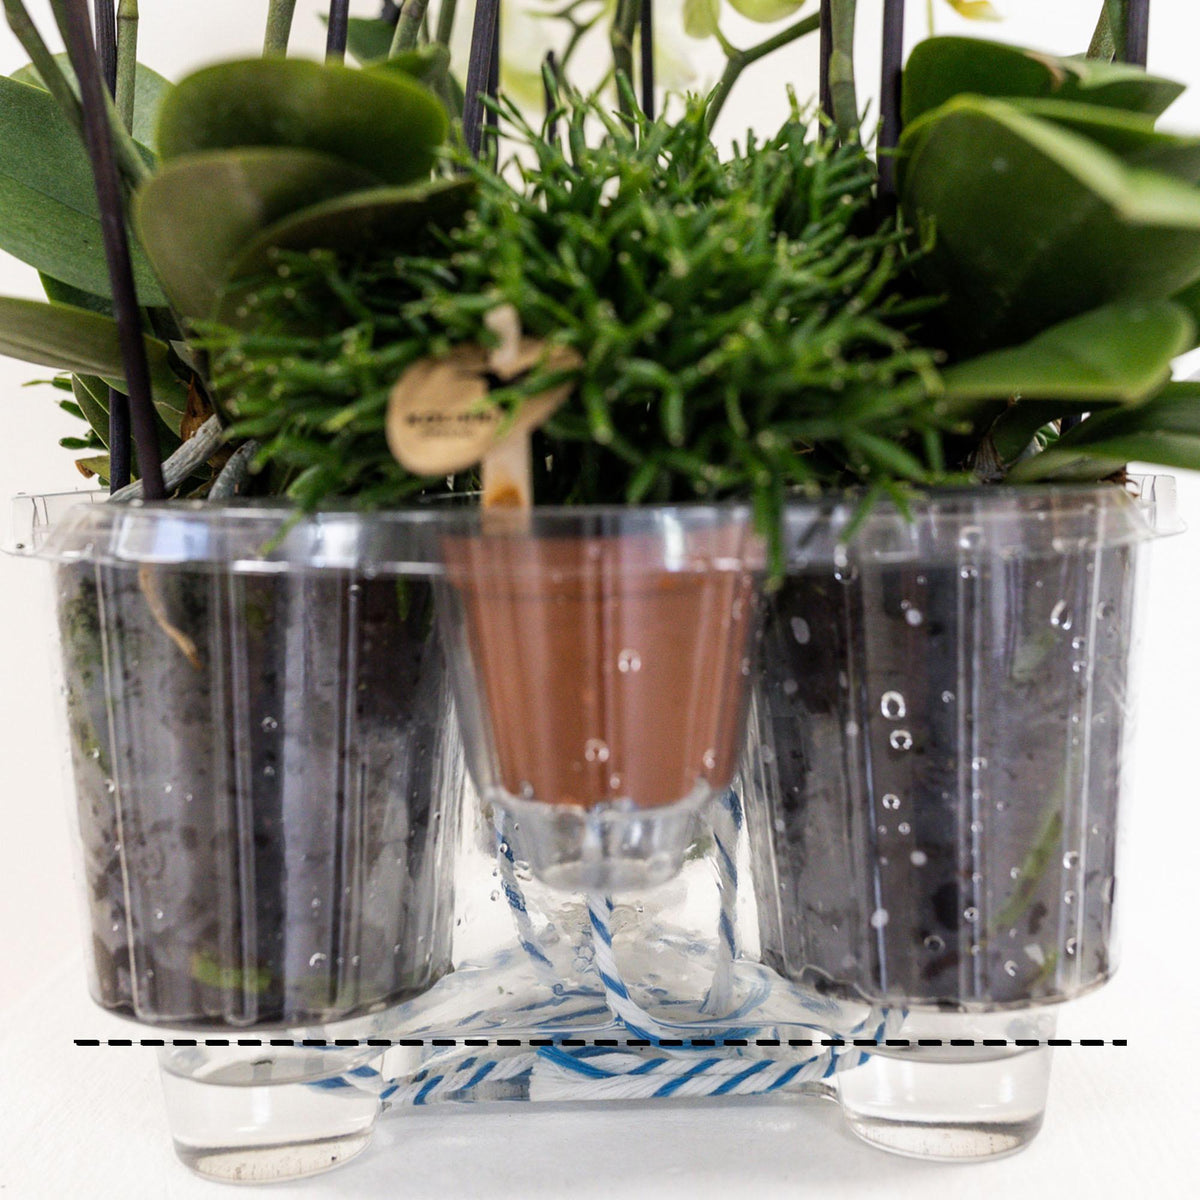 Set van drie oranje orchideeën in een Cotton Basket met waterreservoir. Inclusief Mono Bouquet met zelfvoorzienend waterreservoir.